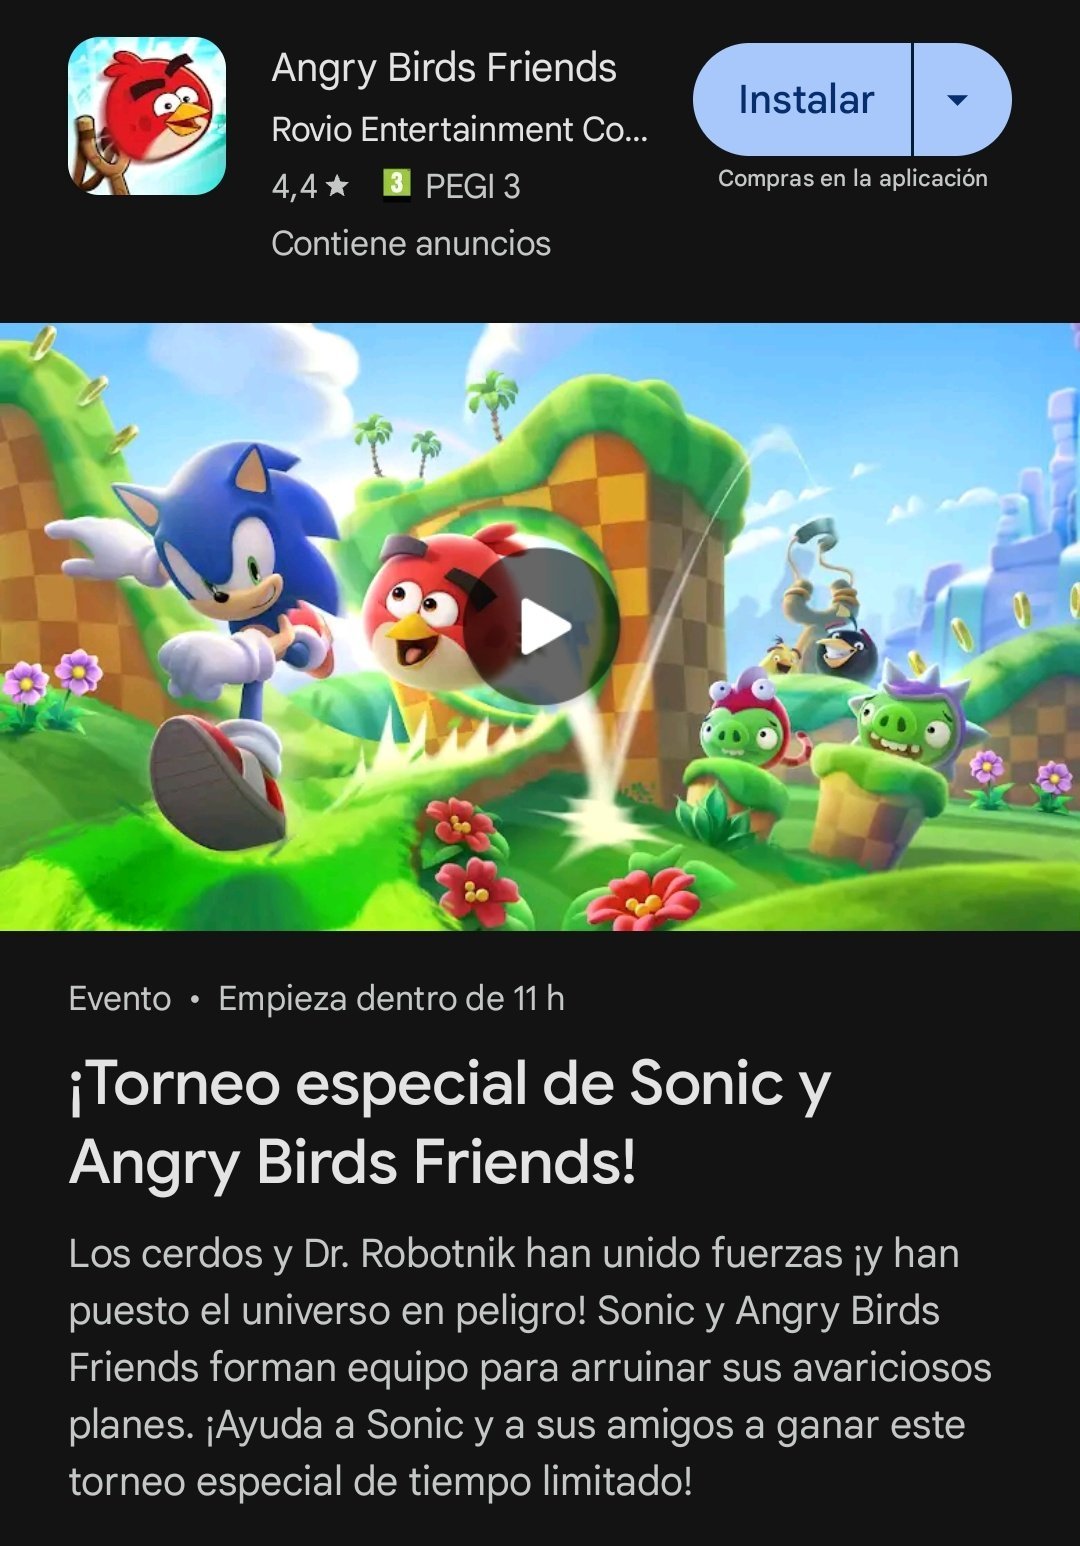 Sonic The Hedgehog x Angry Birds anuncian colaboración,¿Nuevo juego en camino? 14